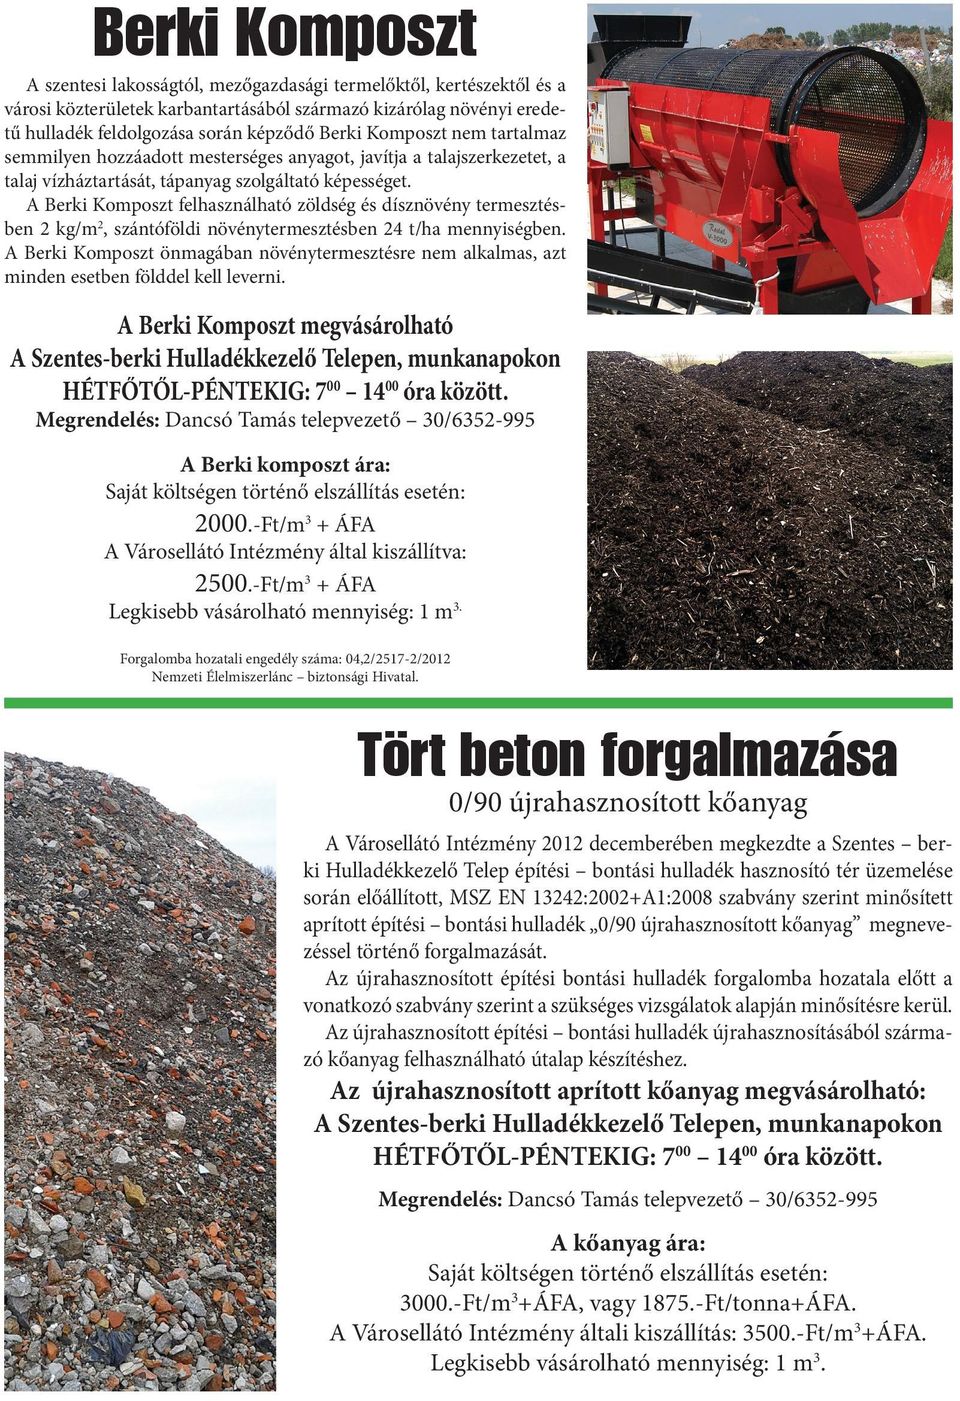 A Berki Komposzt felhasználható zöldség és dísznövény termesztésben 2 kg/m2, szántóföldi növénytermesztésben 24 t/ha mennyiségben.